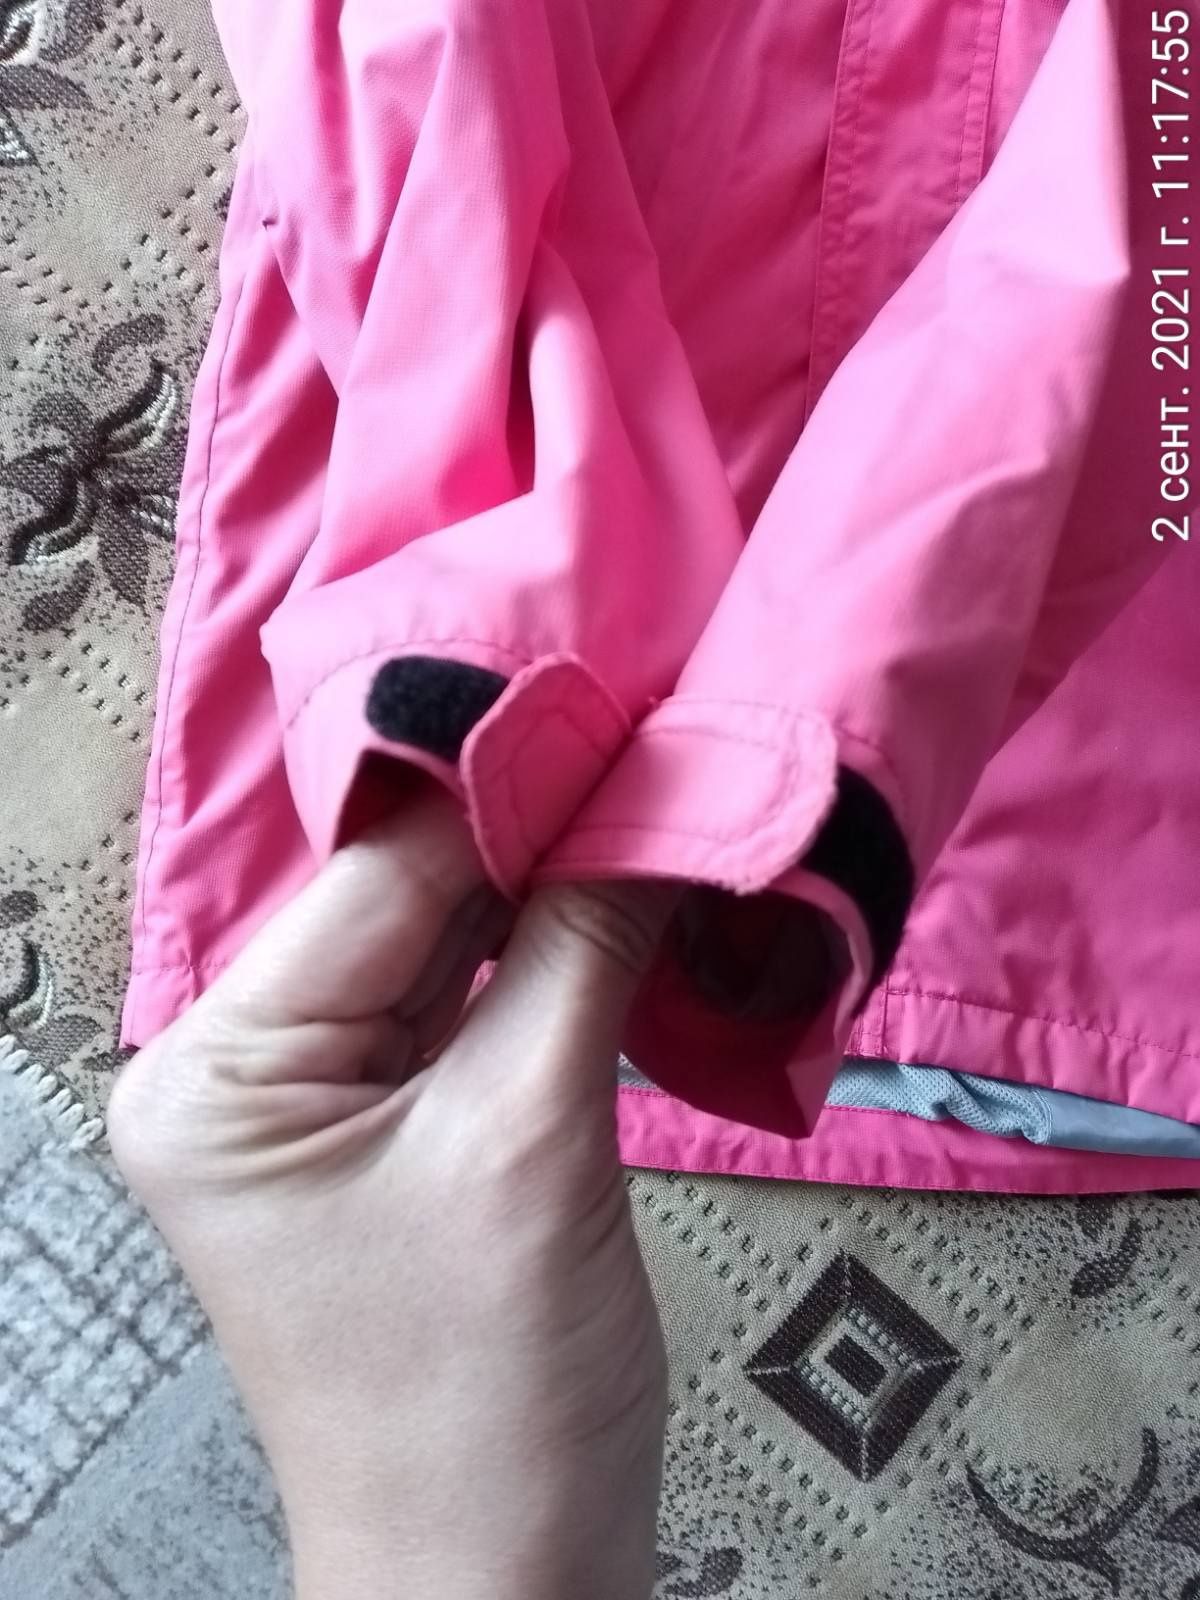 Куртка-штормовка на дівчинку рост 152